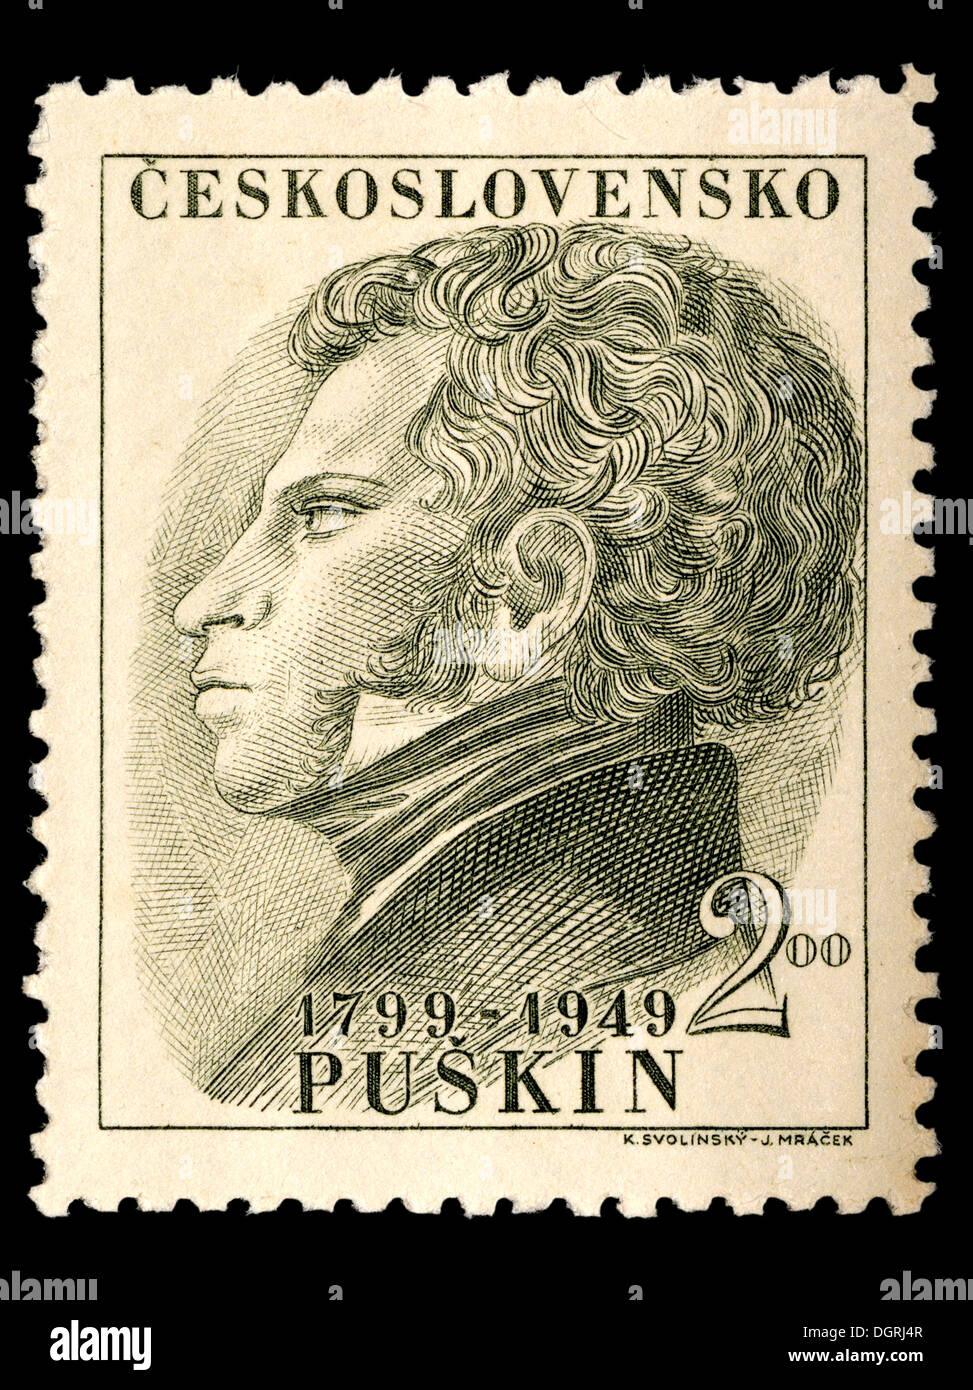 Briefmarke aus der Tschechoslowakei - Aleksandr Pushkin / Alexander Sergeyevich Pushkin (1799-1837) Russische Romantik Autor / Dichter Stockfoto